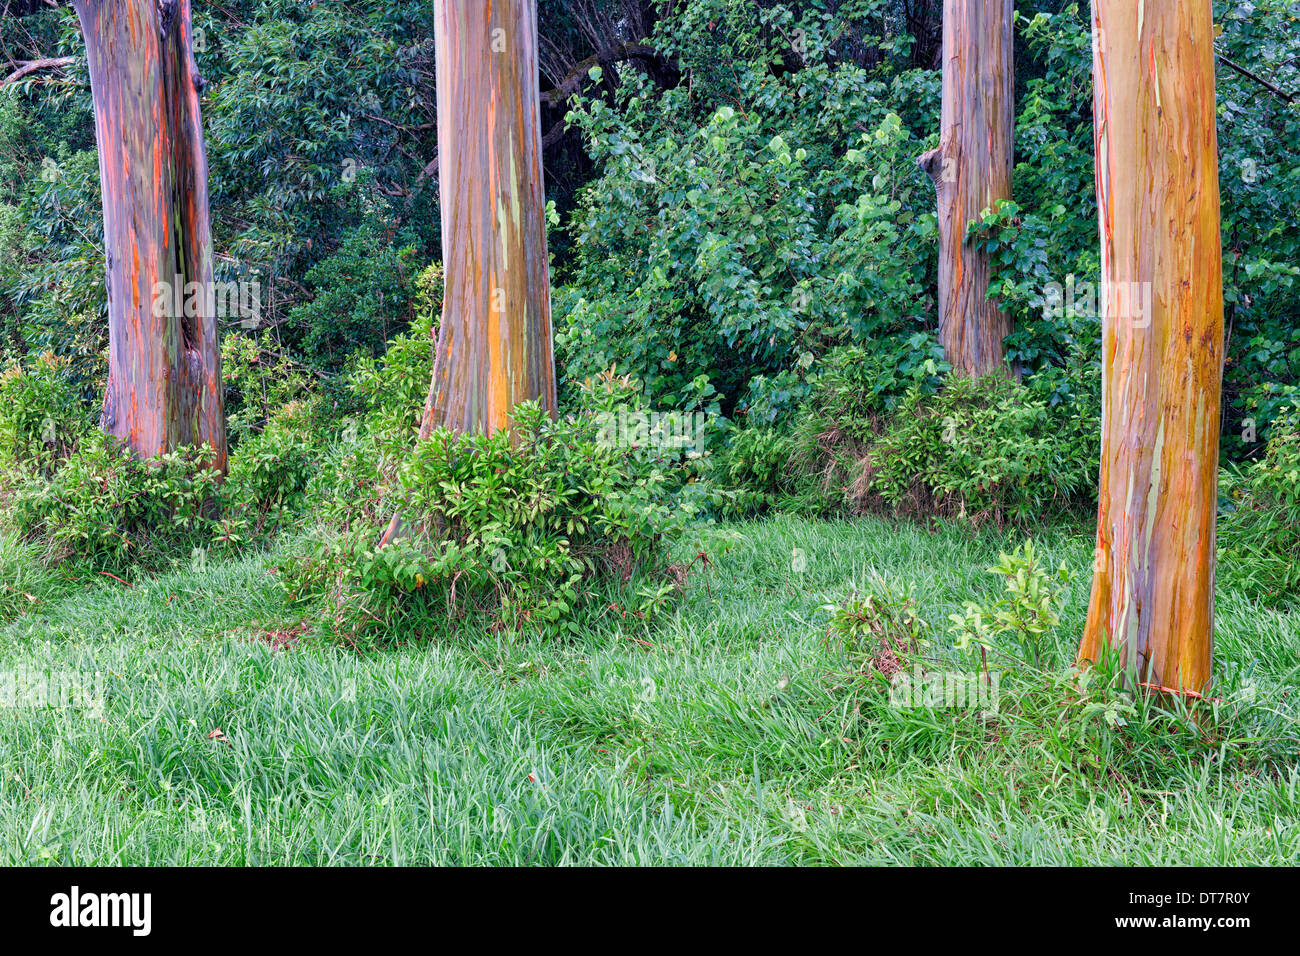 Peeling bark reveals the Rainbow Eucalyptus trees along the road to Hana on Hawaii's island of Maui. Stock Photo